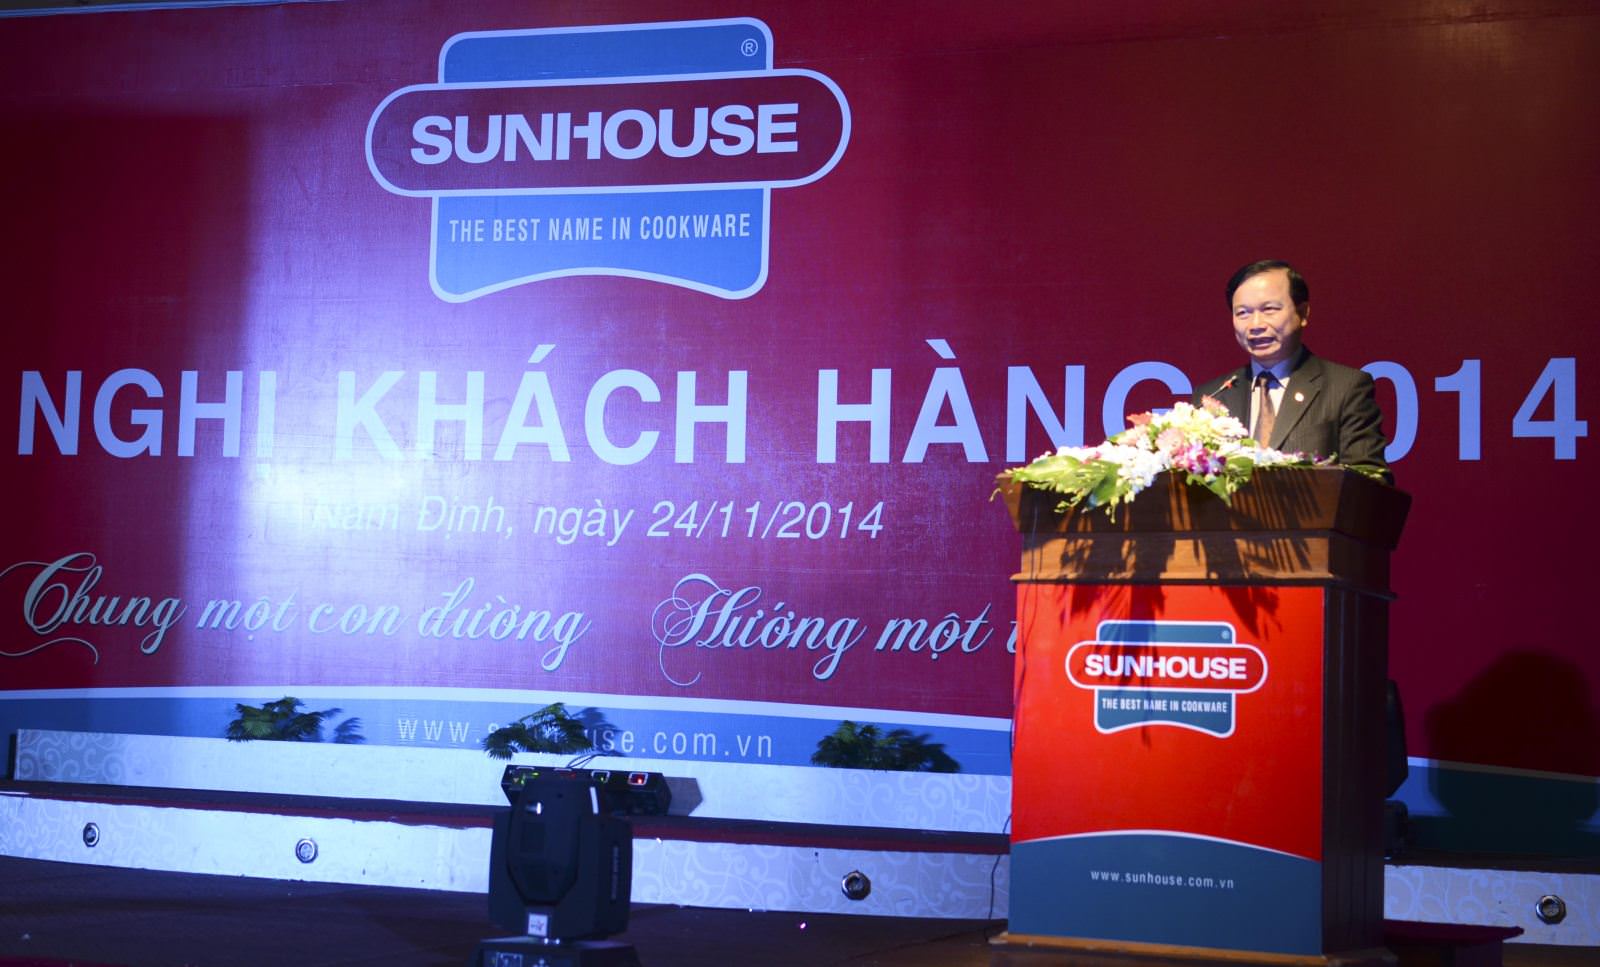 Hội nghị khách hàng Sunhouse tại Nam Định 2014: Chung một con đường – Hướng một tương lai